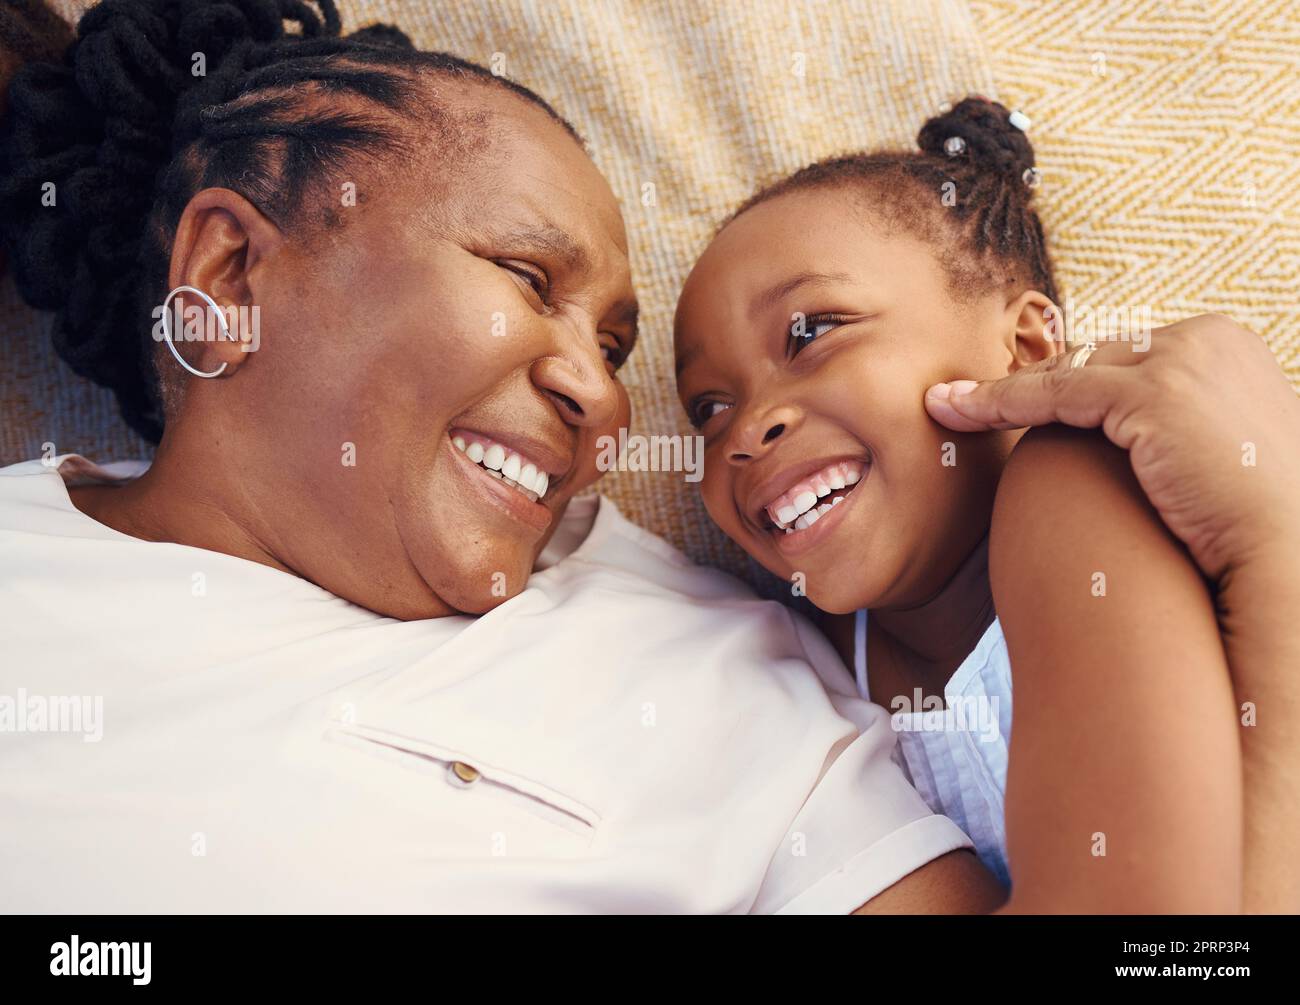 Glücklich, lächelnd und Familie einer schwarzen Oma und eines Kindes in Glück, entspannt und zu Hause auf einem Bett liegend. Ältere afrikanische Großmutter und kleines Mädchen in fröhlicher, liebevoller und lächelnder Begeisterung im Schlafzimmer Stockfoto